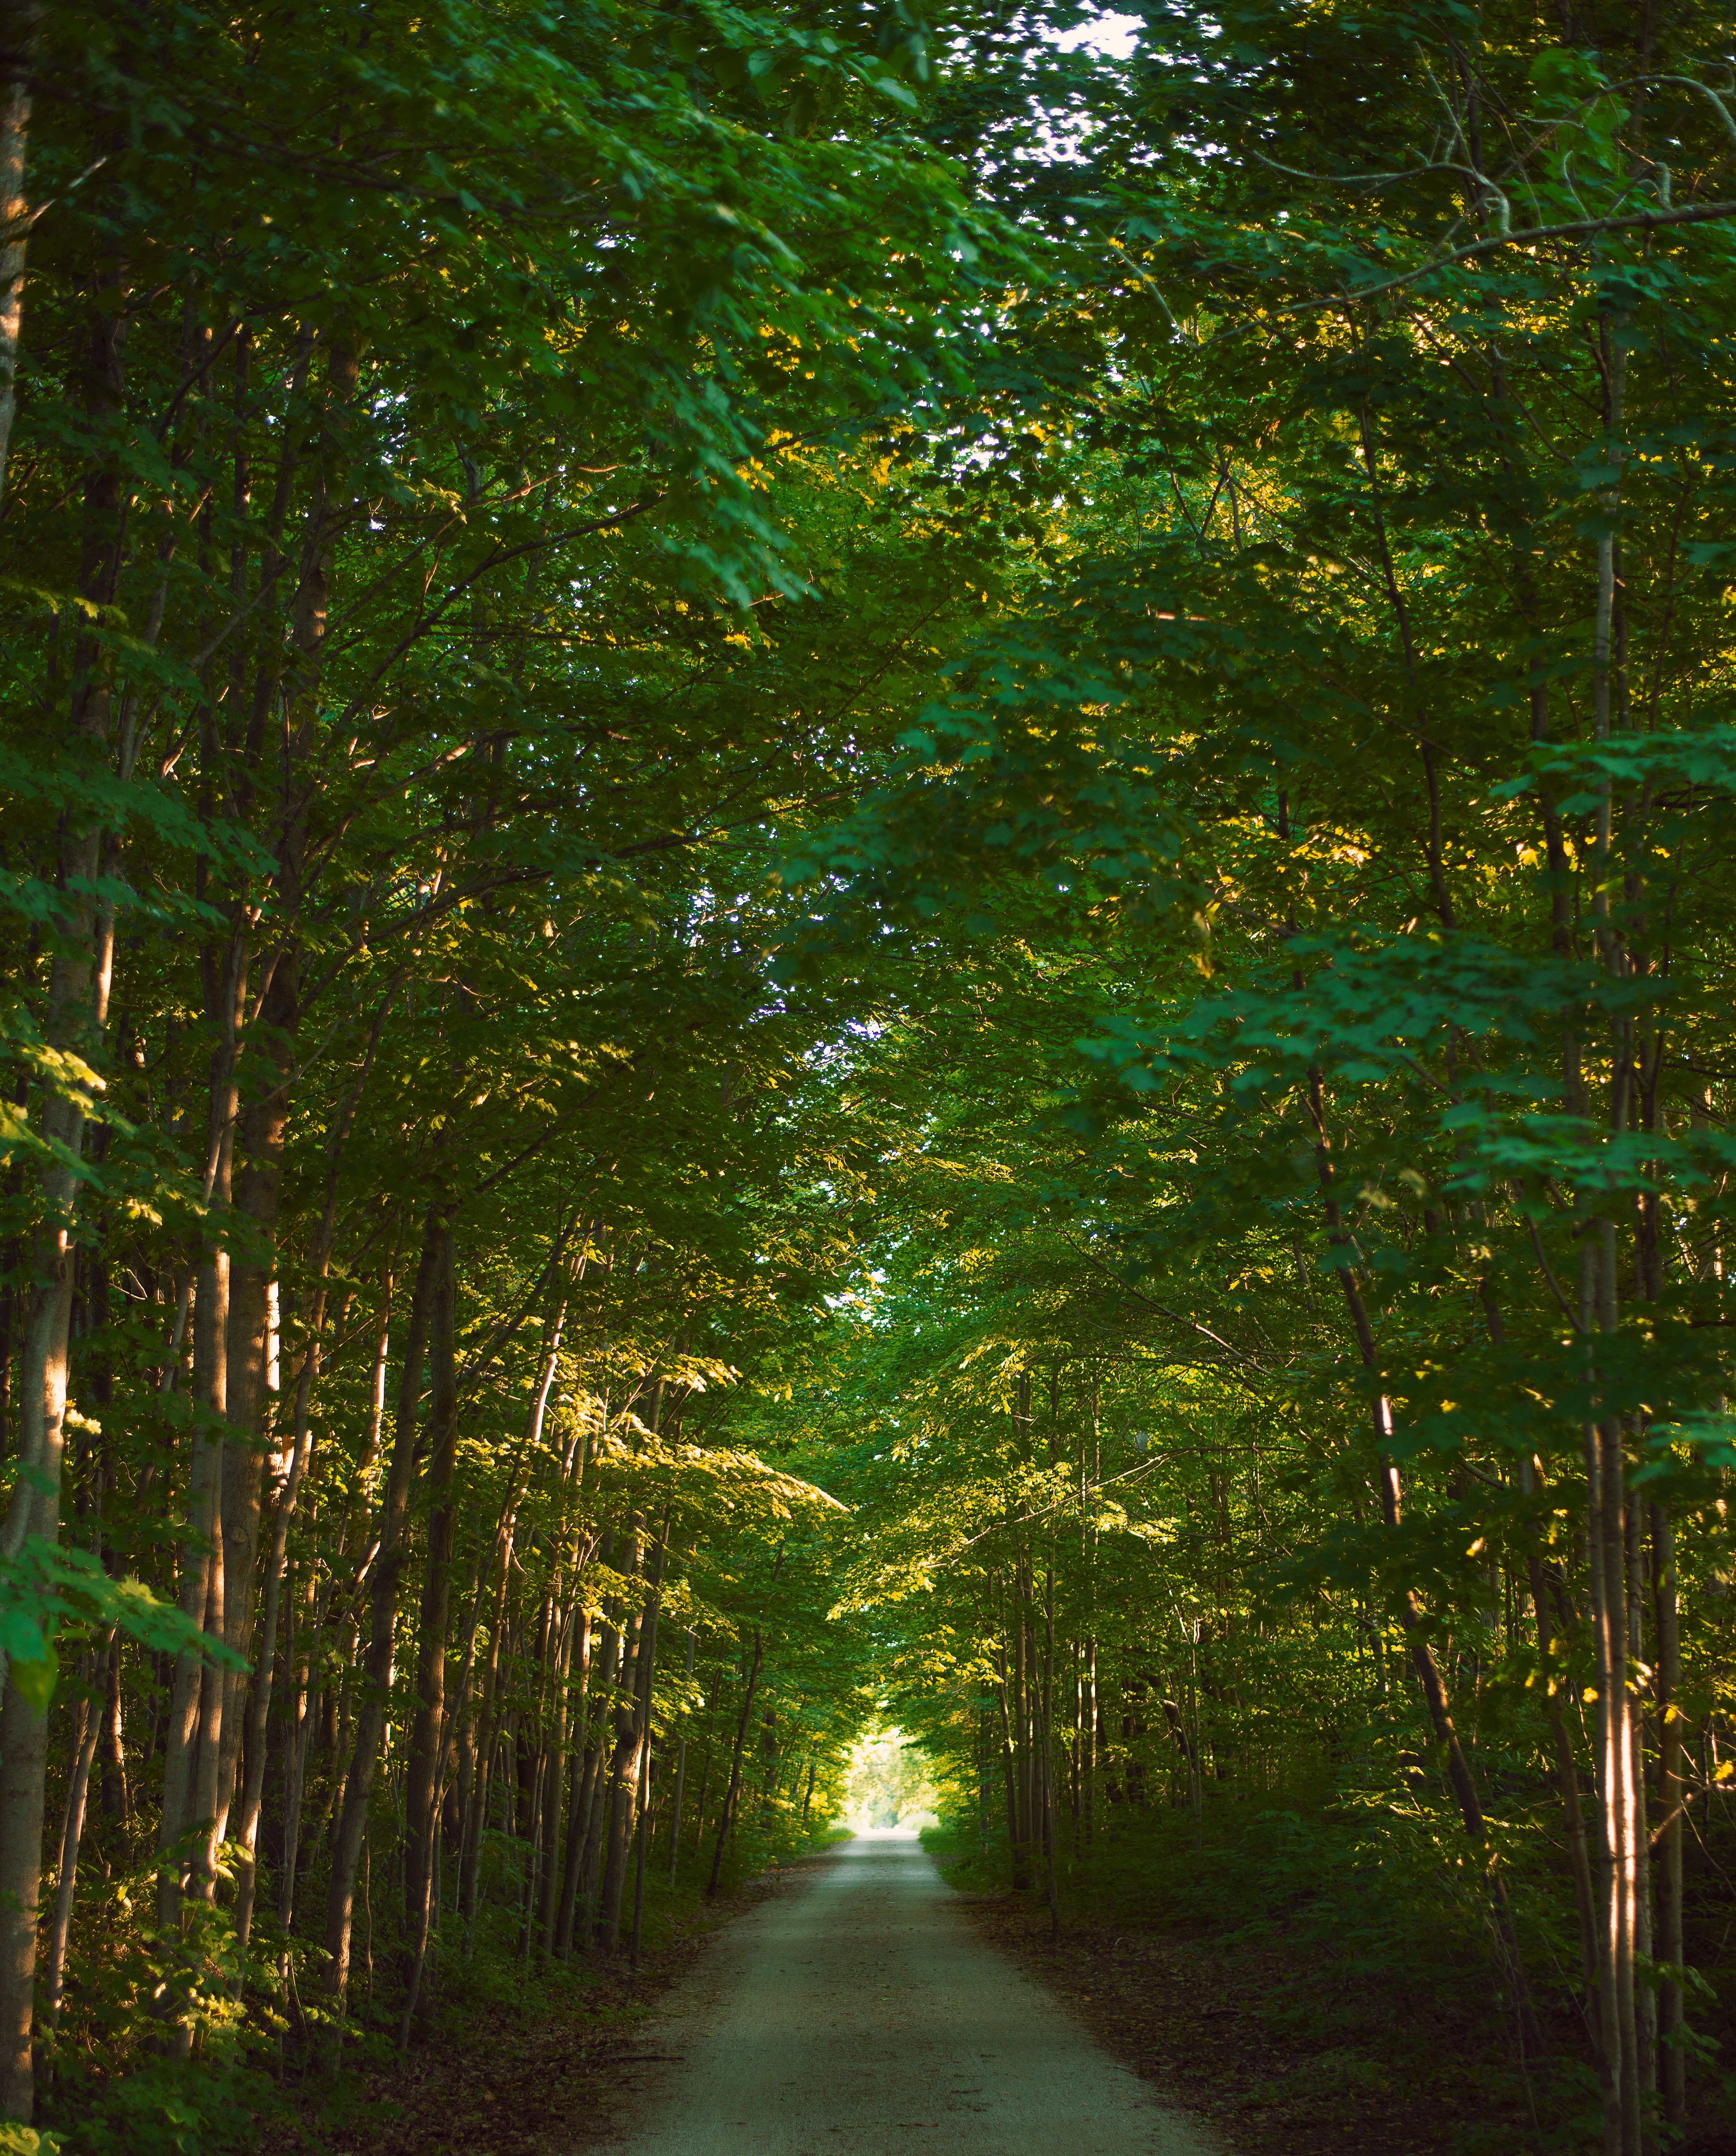 Carretera vacía llena de árboles verdes Foto 